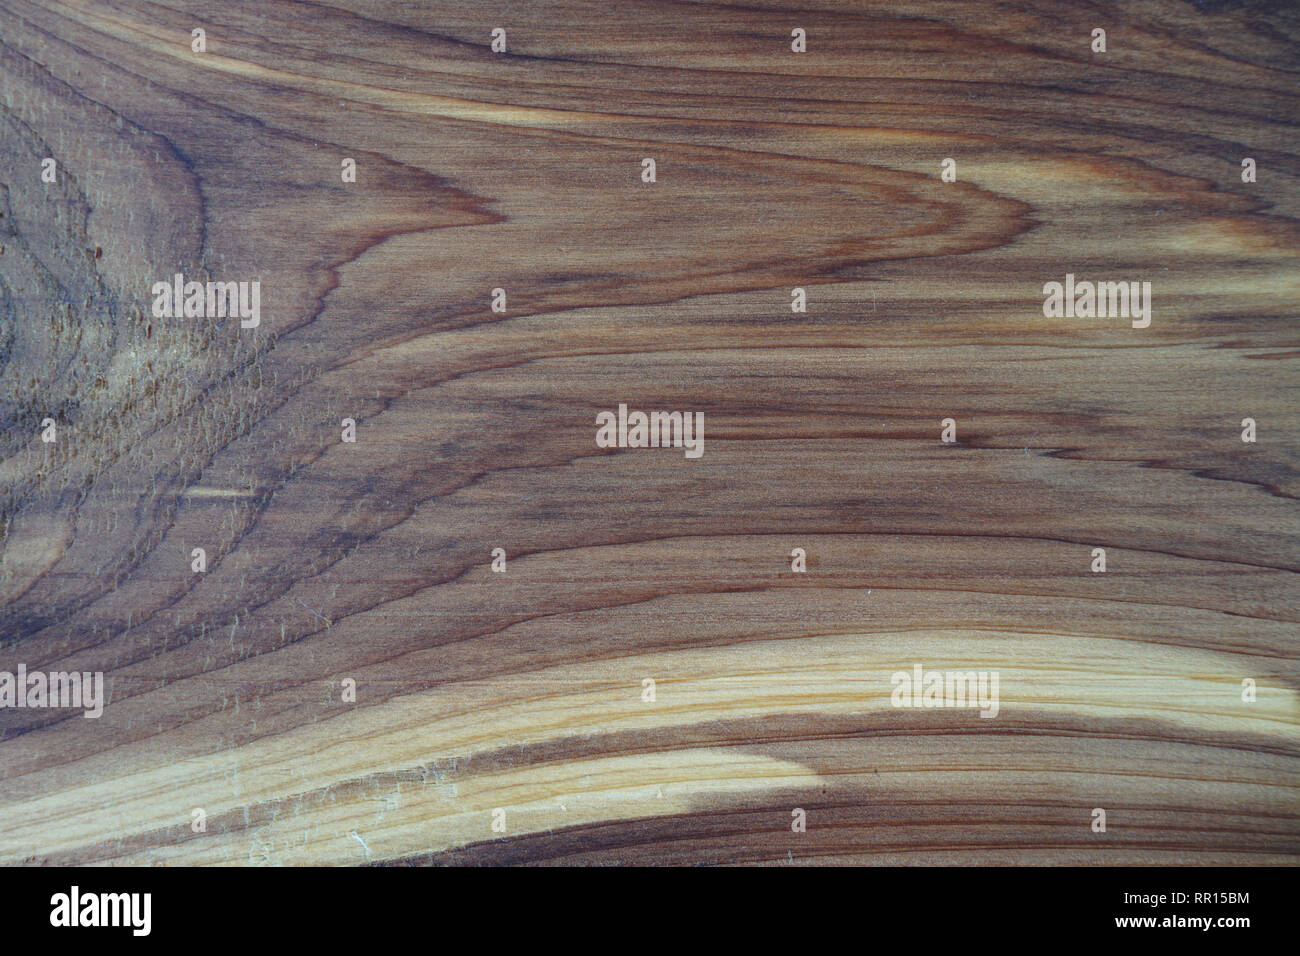 Nahaufnahme einer Zeder Plank, Knoten Textur und natürlichem Holz - Maserung wie Holz Hintergrund Stockfoto